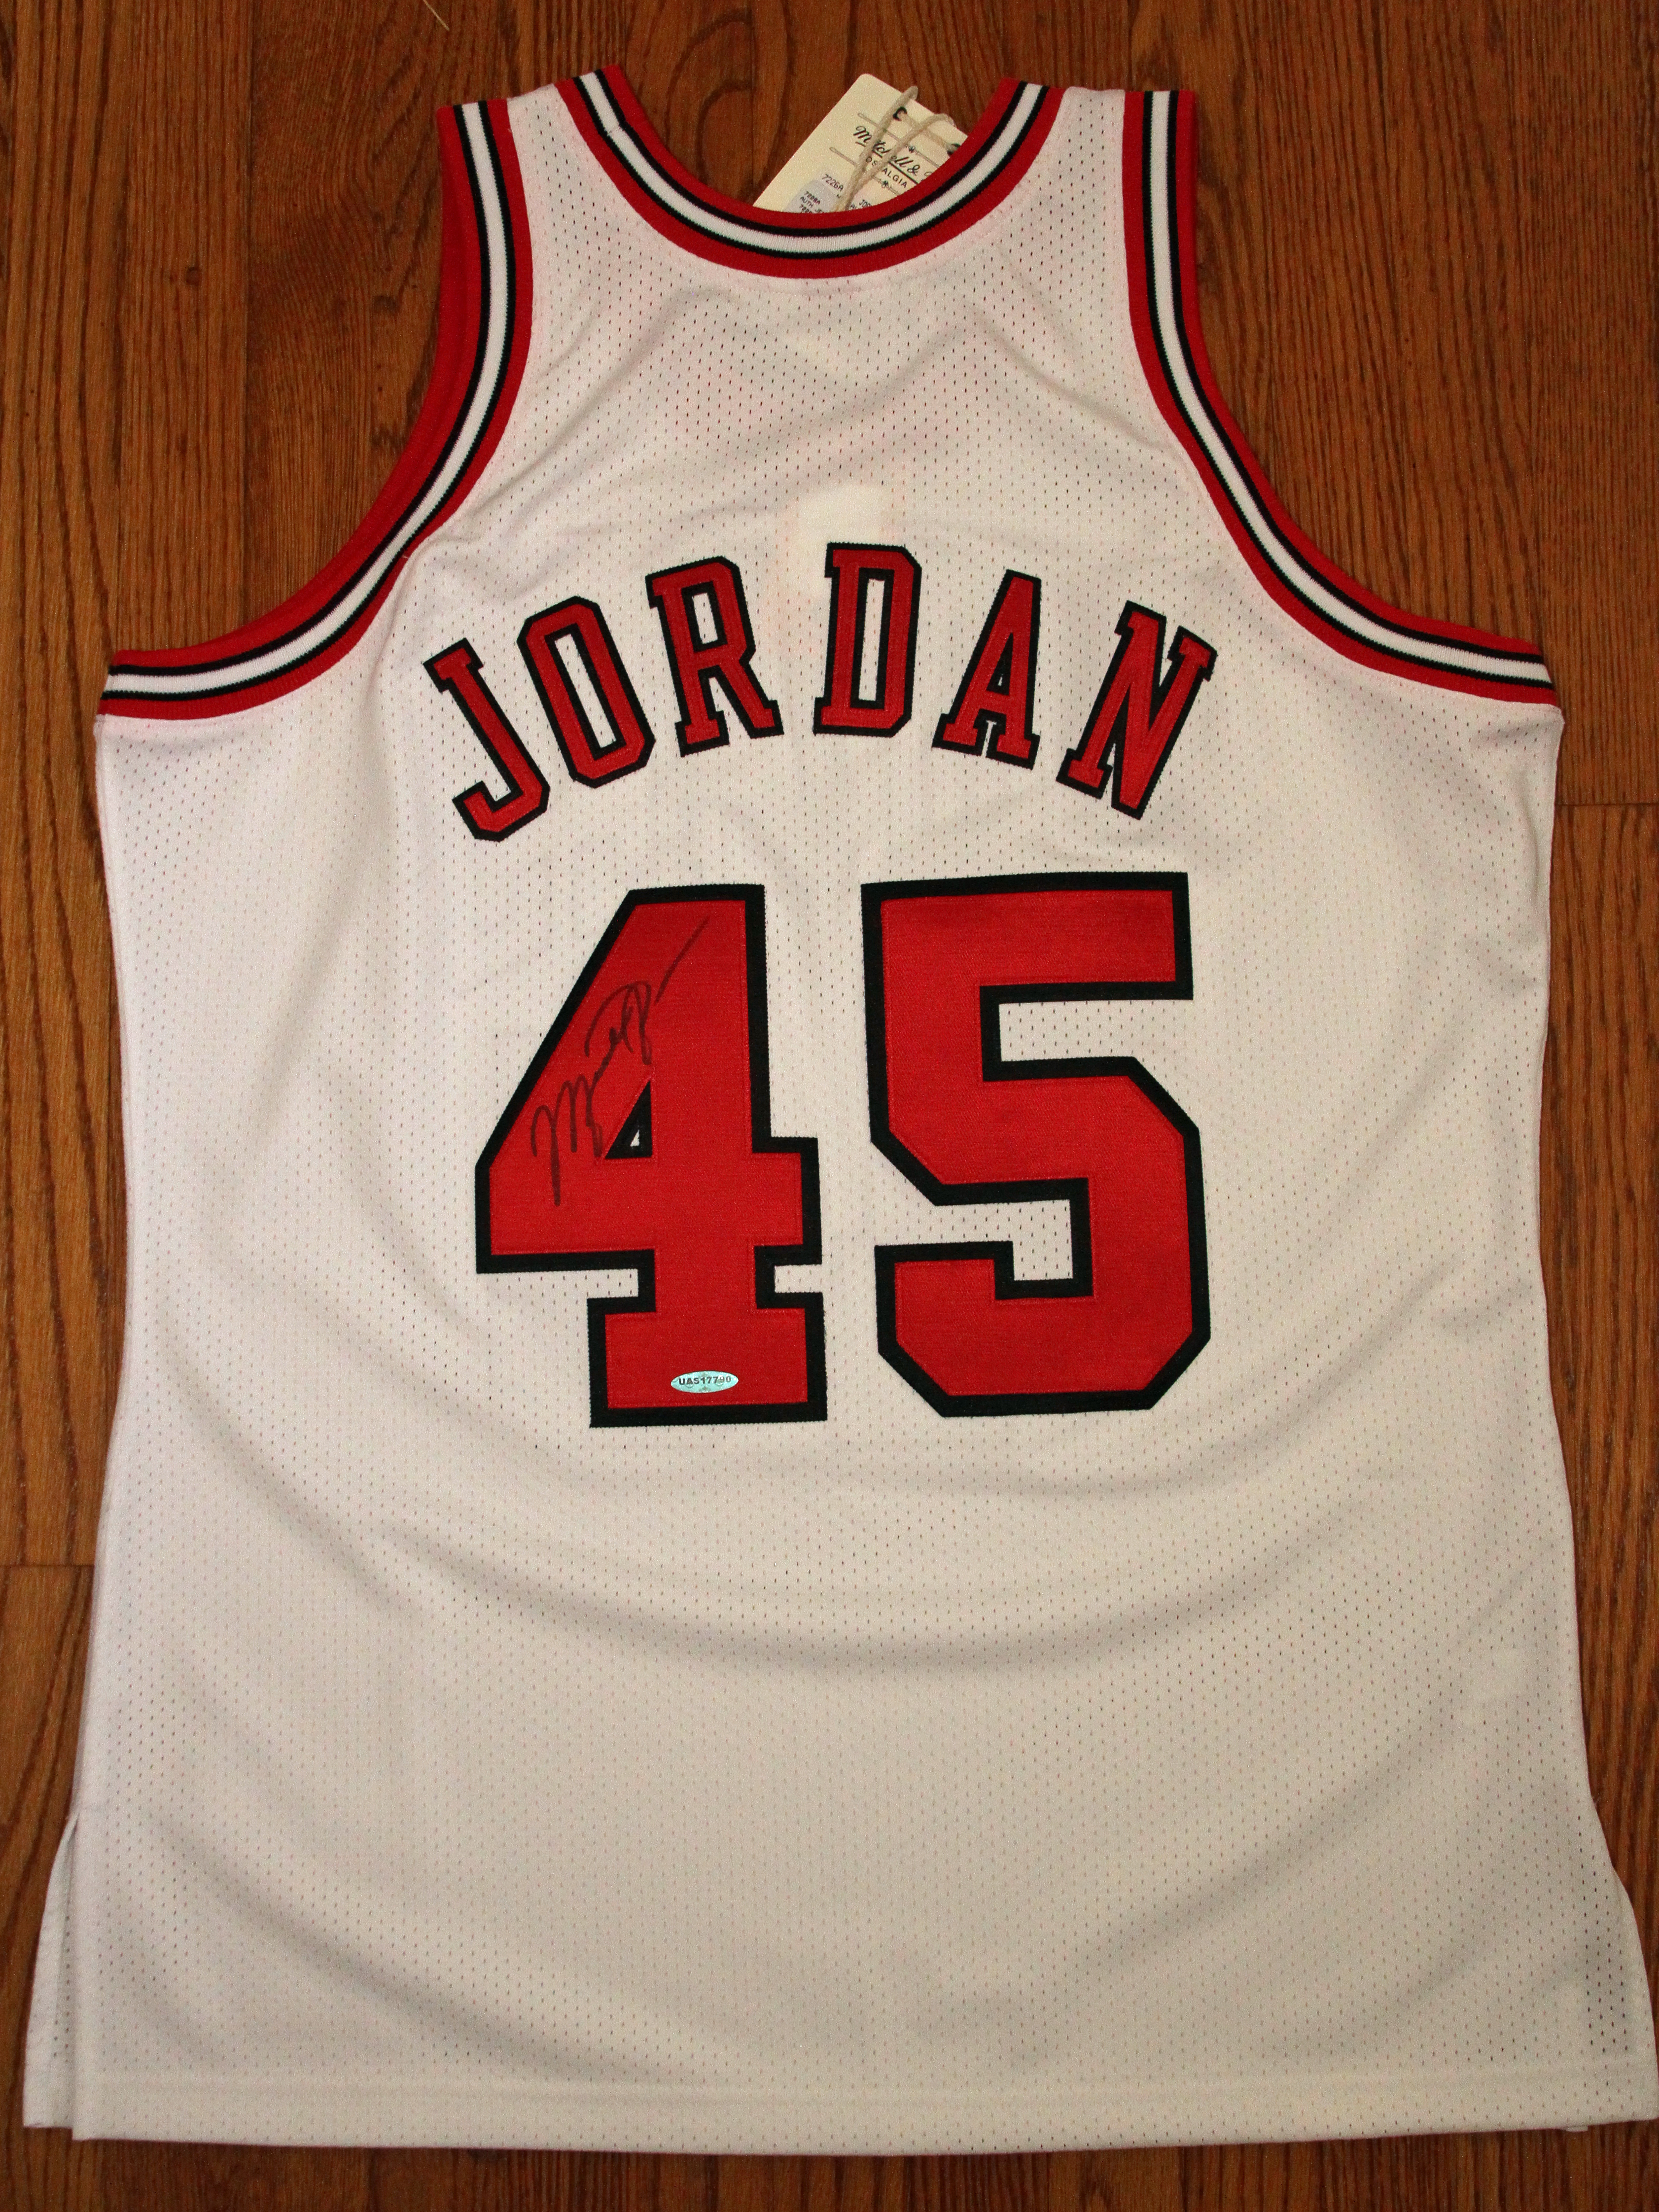 NBA Store - I'm Back. Rare Signed #45 Michael Jordan